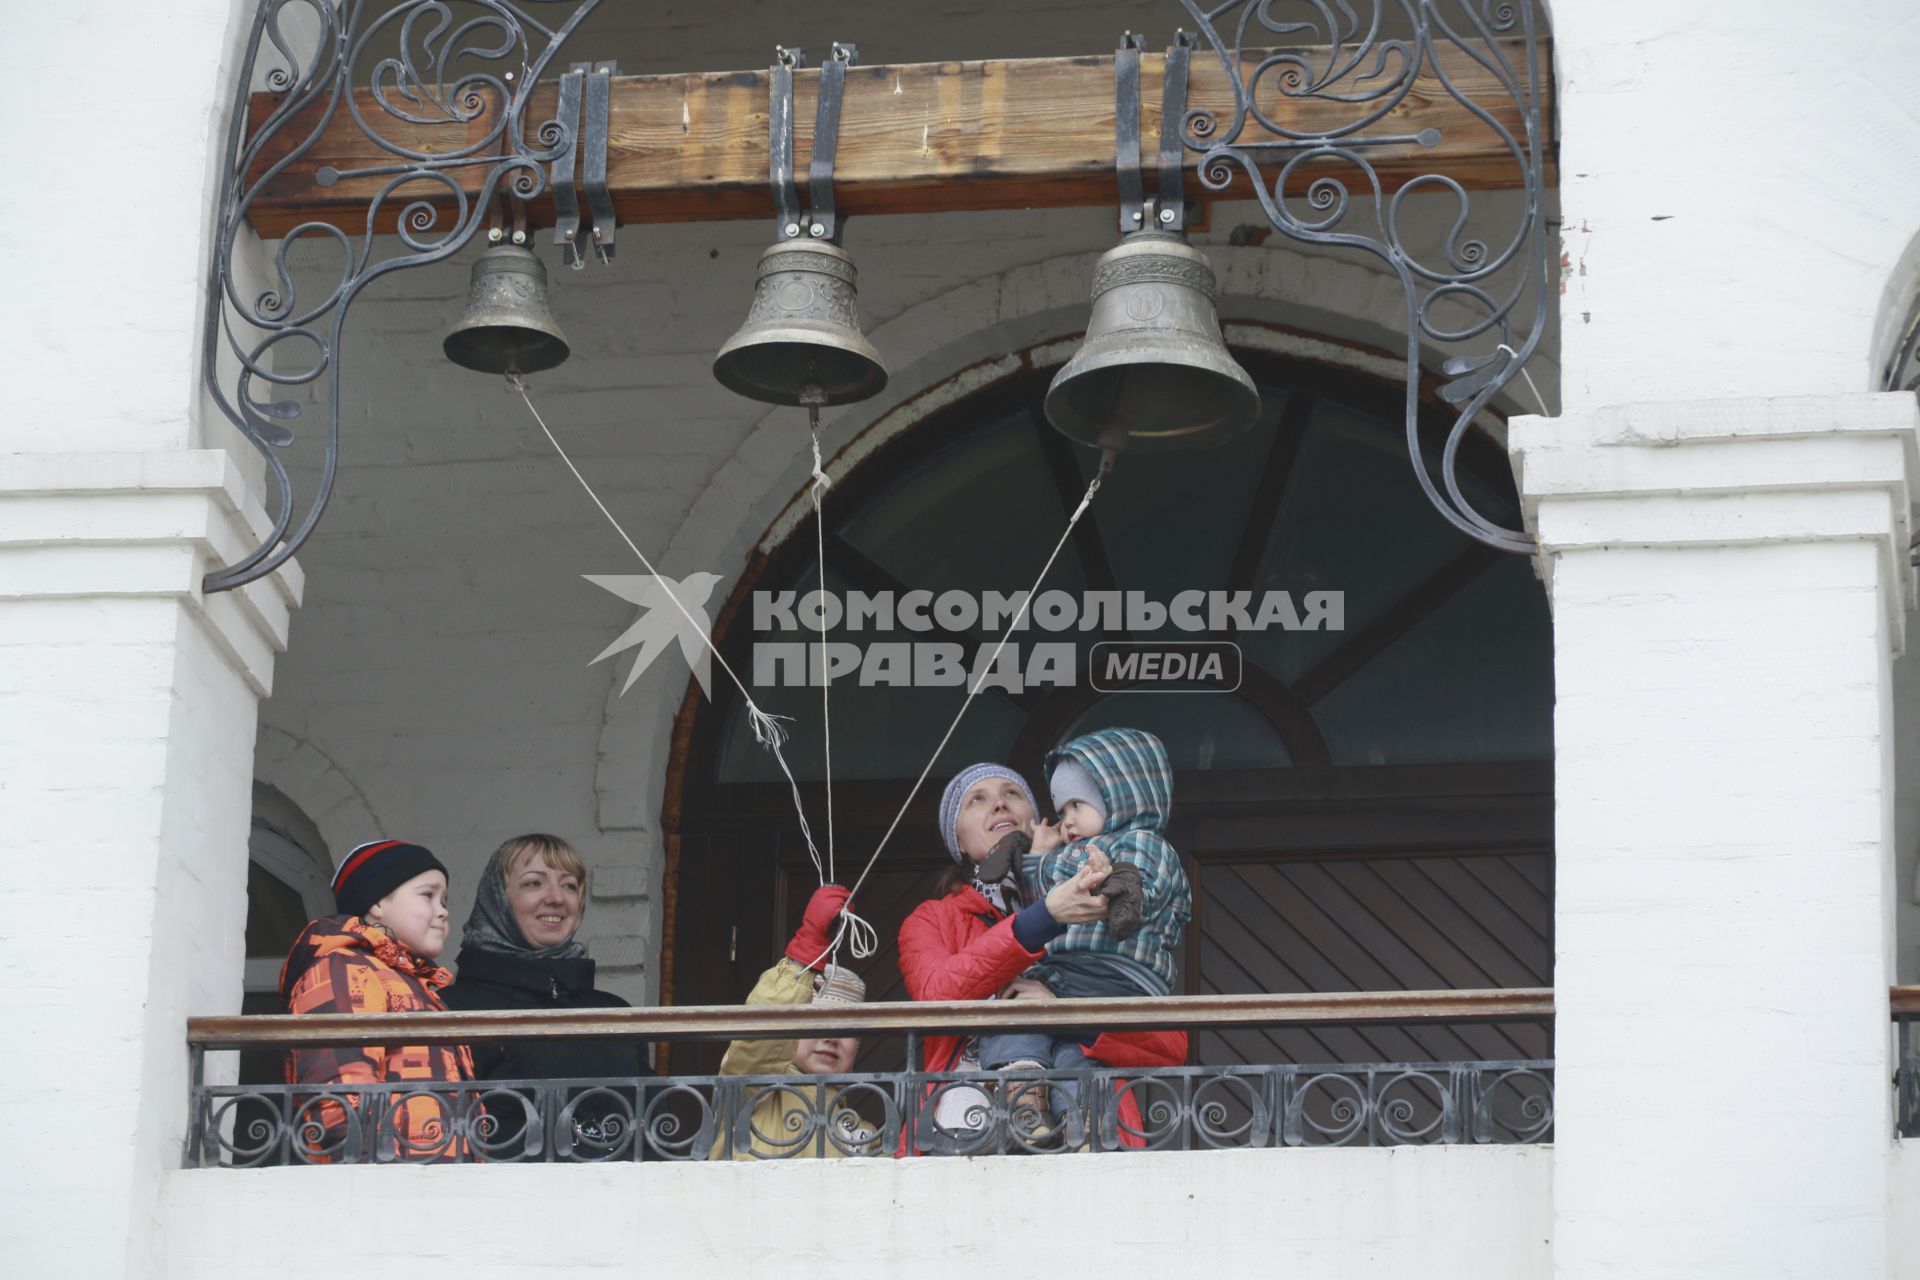 Барнаул.  Посетители колокольни  в день празднования православной Пасхи.